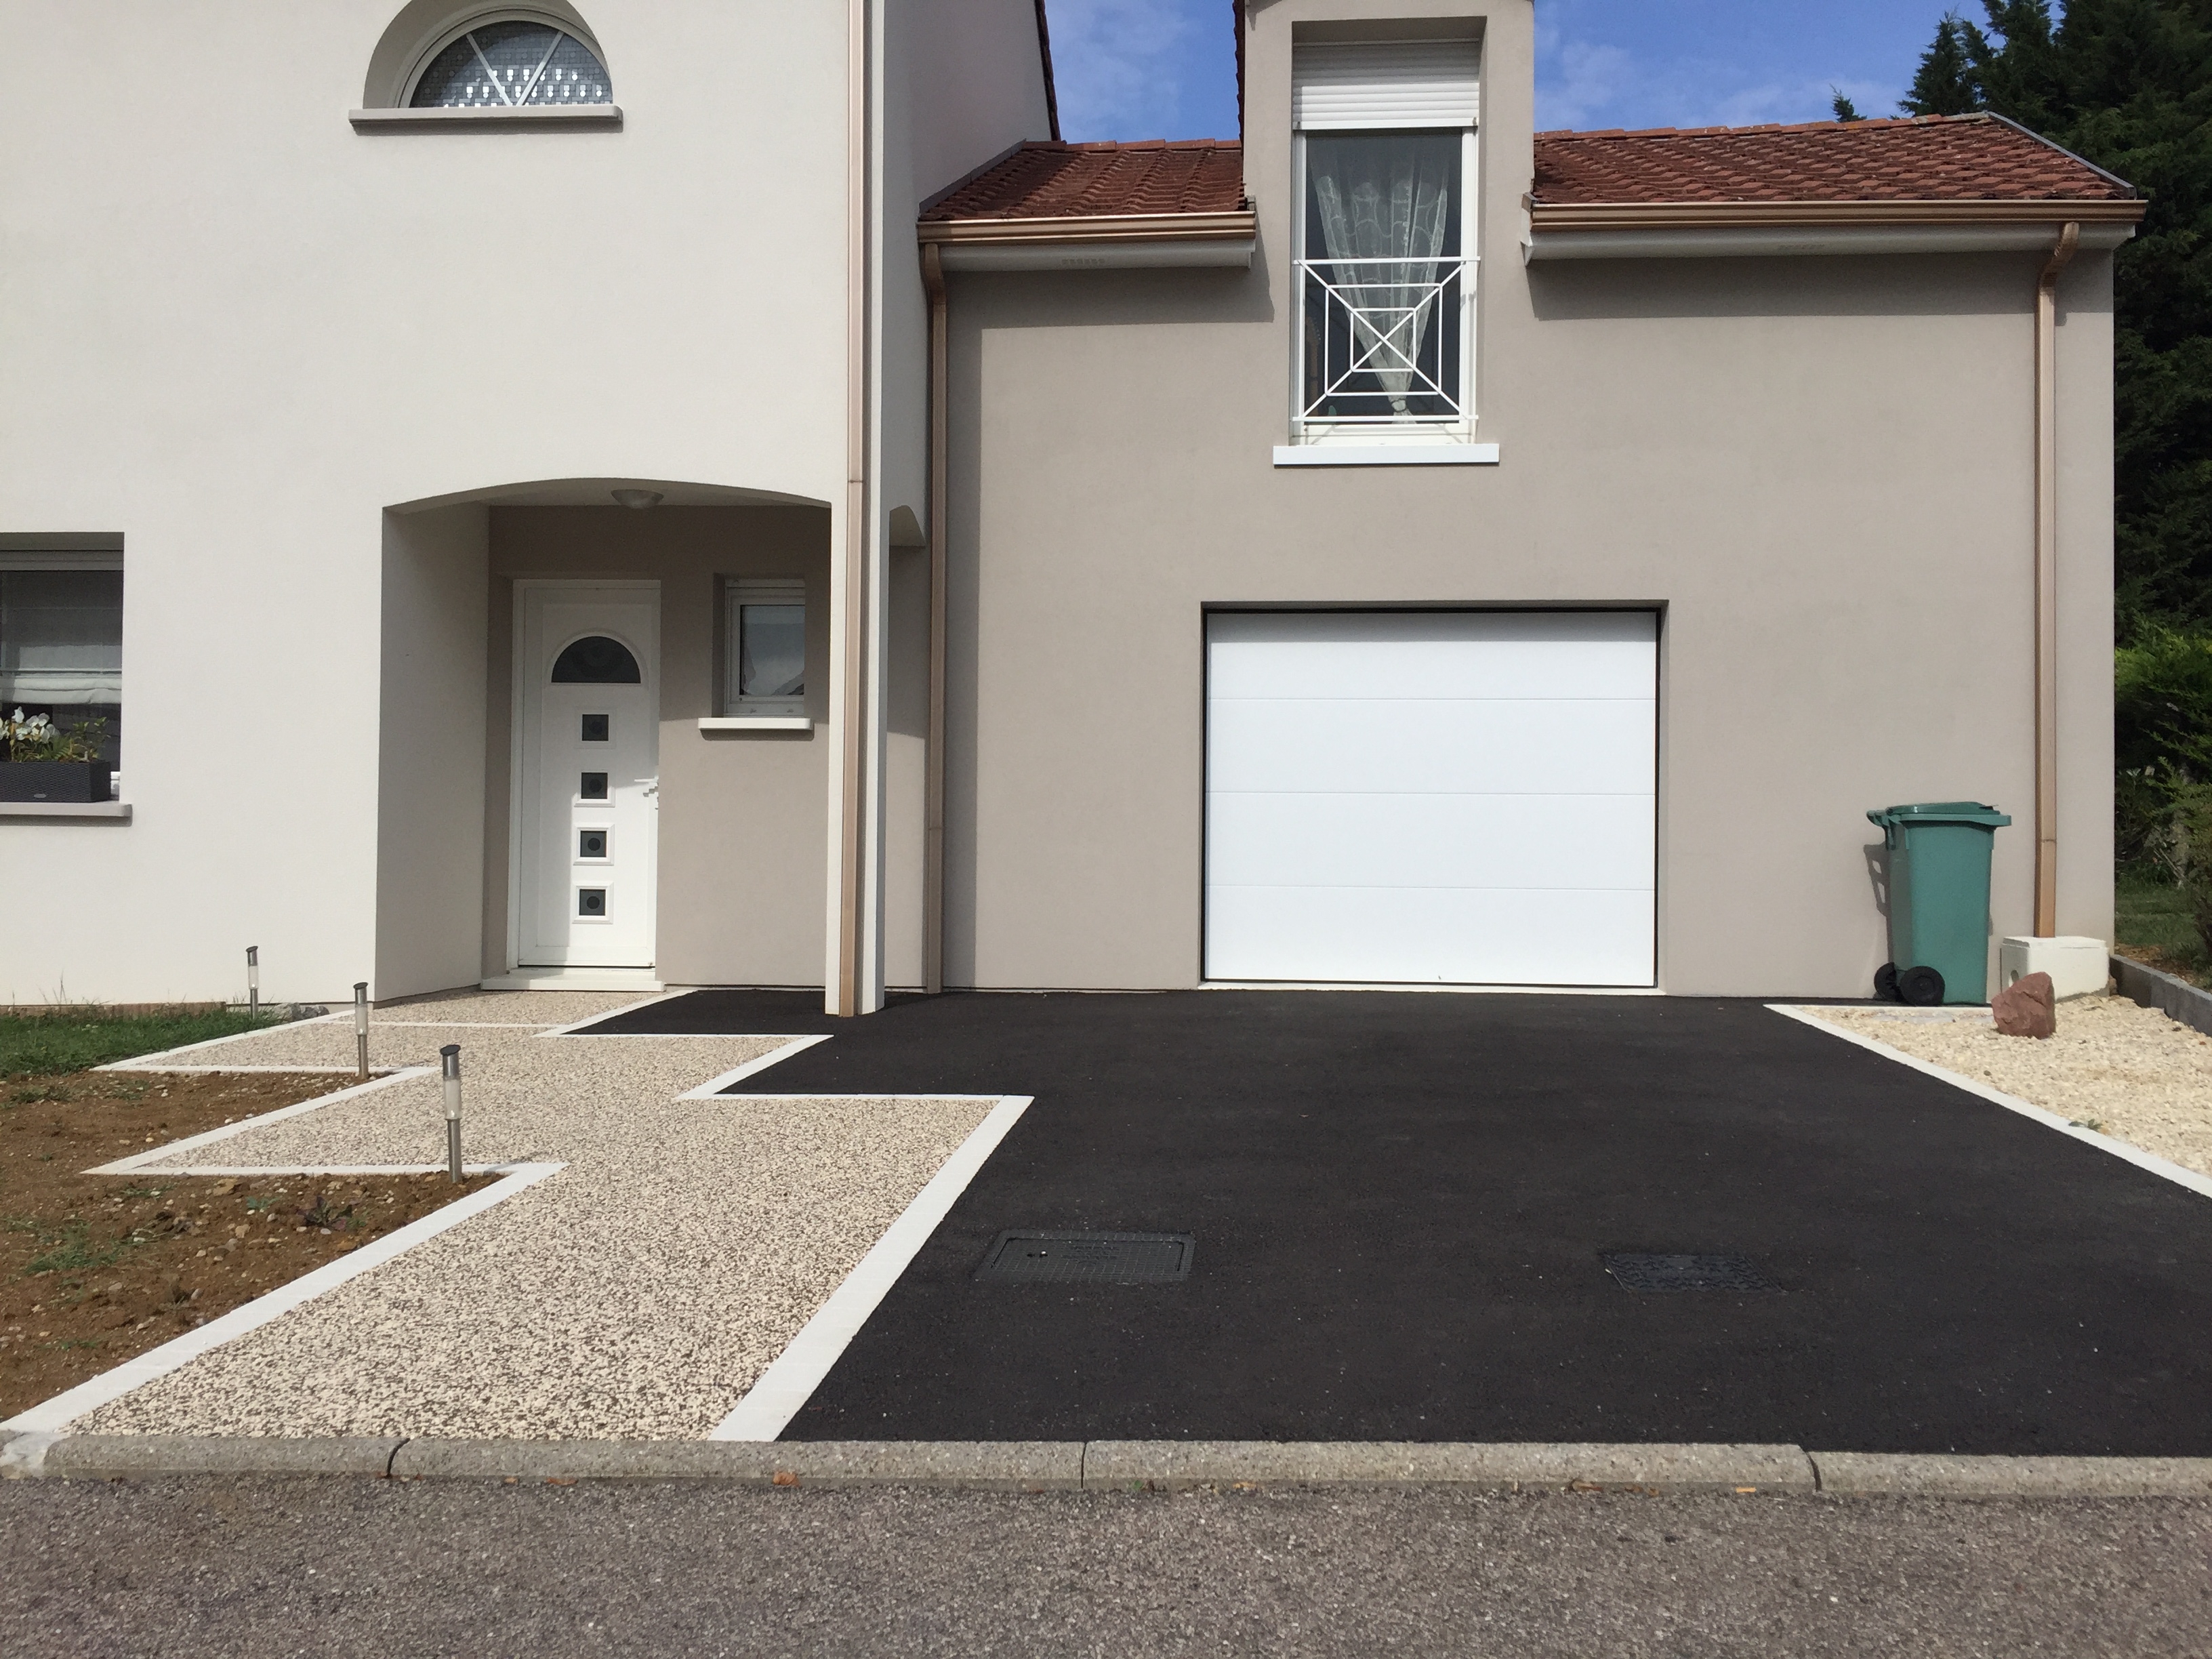 Ralisation Alle de garage en Enrob noir  Chaud, Hydrostar et Pav La Couture - Meurthe-et-Moselle cre le 15/05/2019